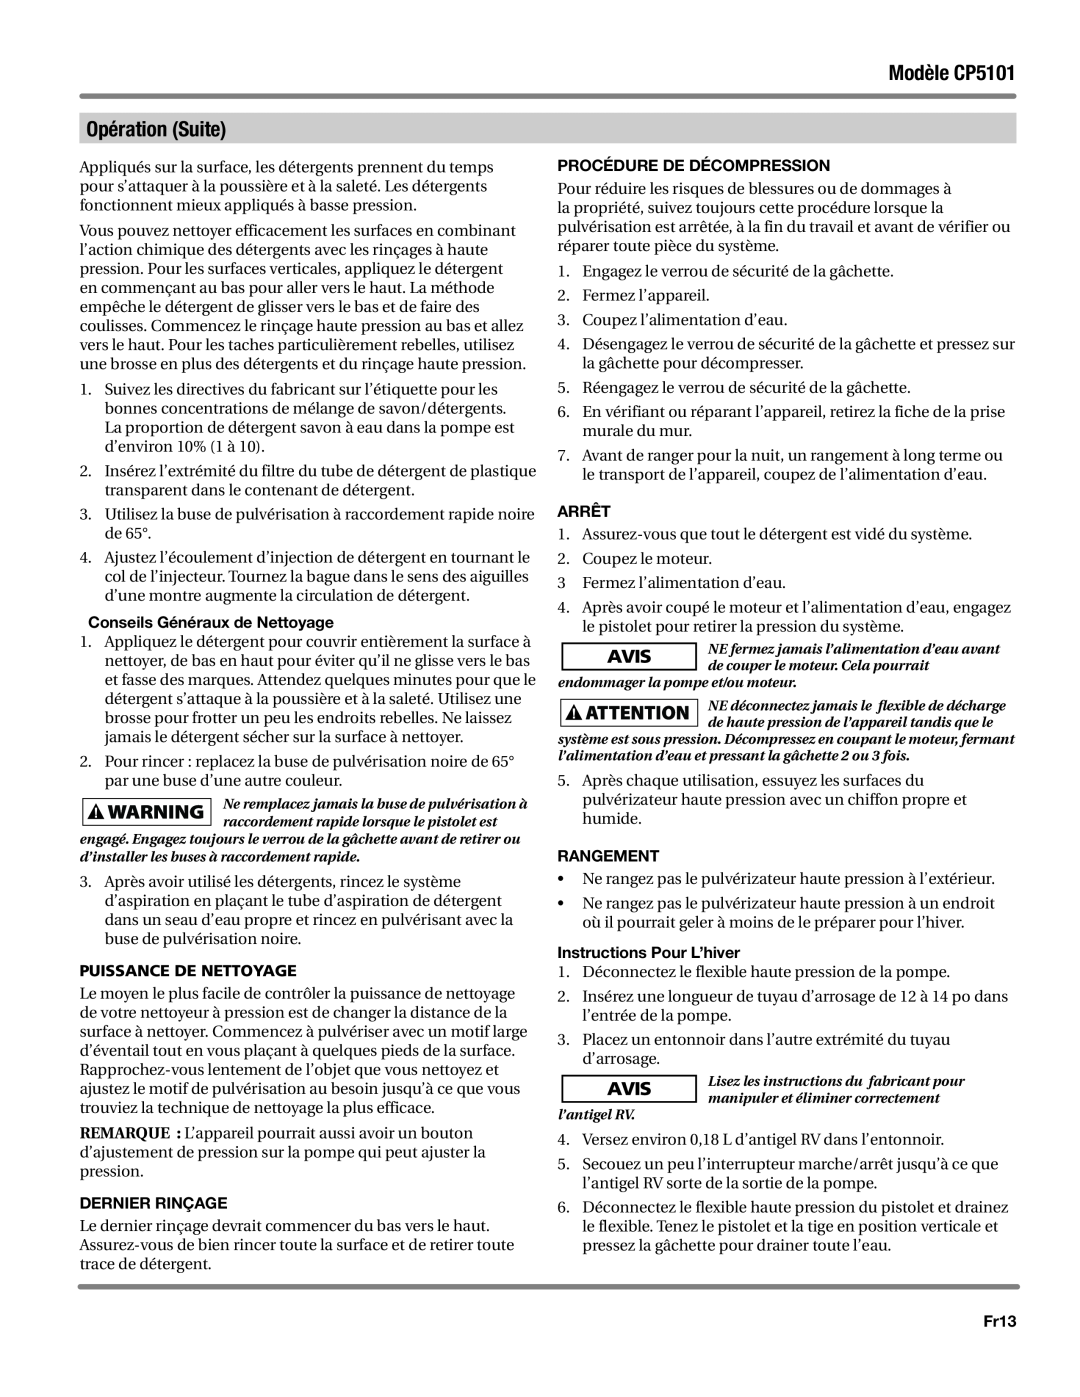 Campbell Hausfeld CP5101 Conseils Généraux de Nettoyage, Puissance de nettoyage, Dernier Rinçage, Arrêt, Rangement, Fr13 